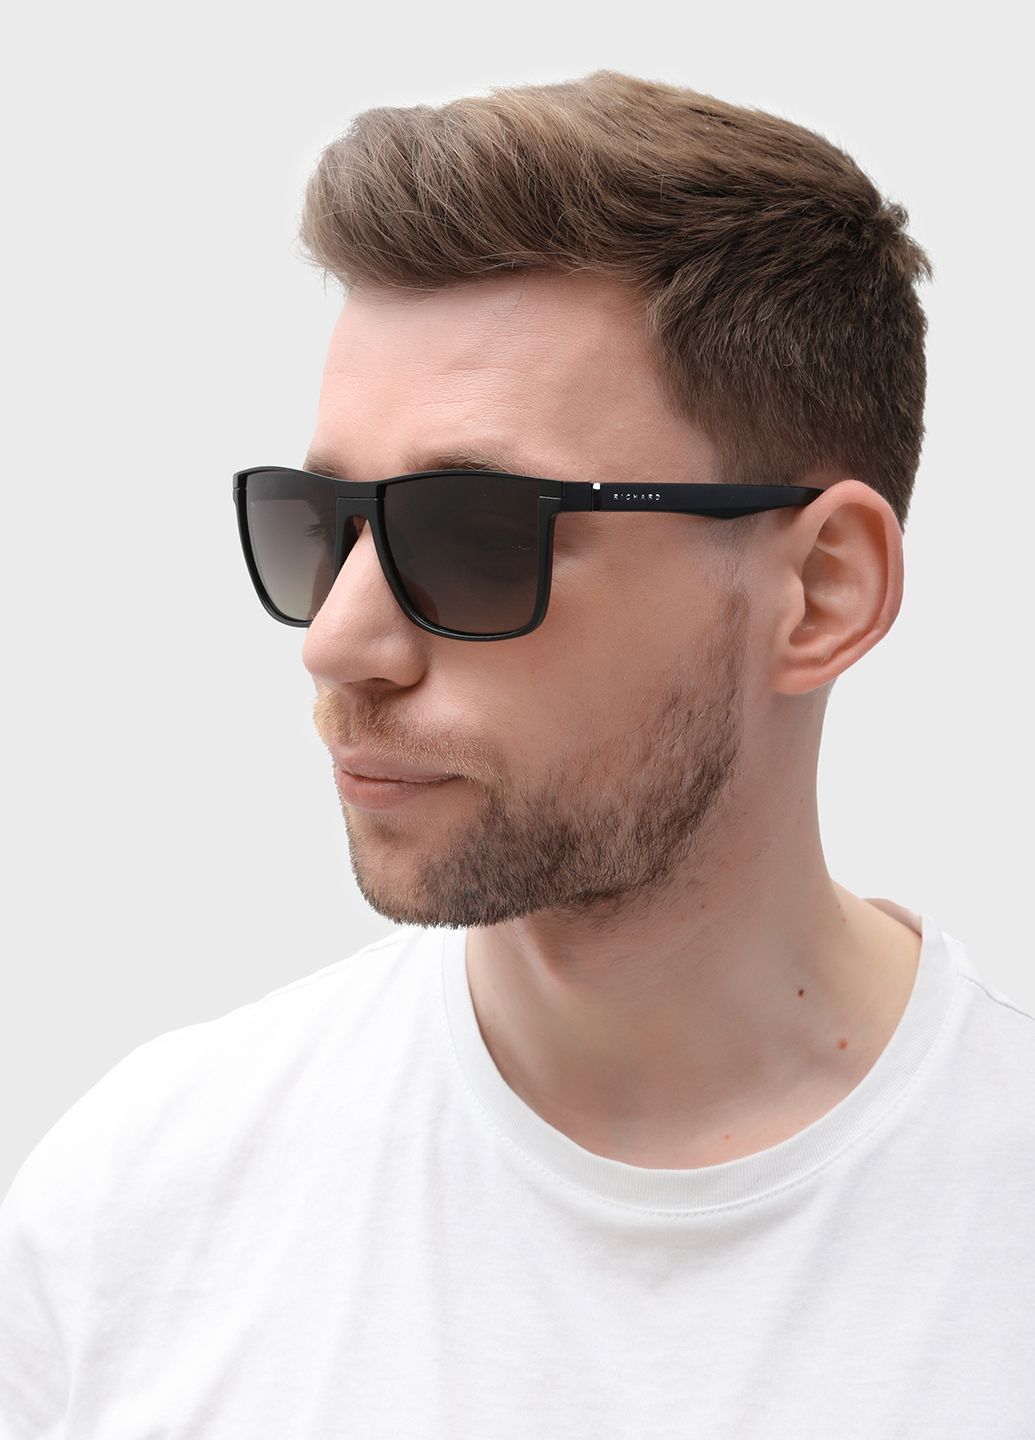 Купить Мужские солнцезащитные очки Thom Richard с поляризацией TR9041 114004 в интернет-магазине